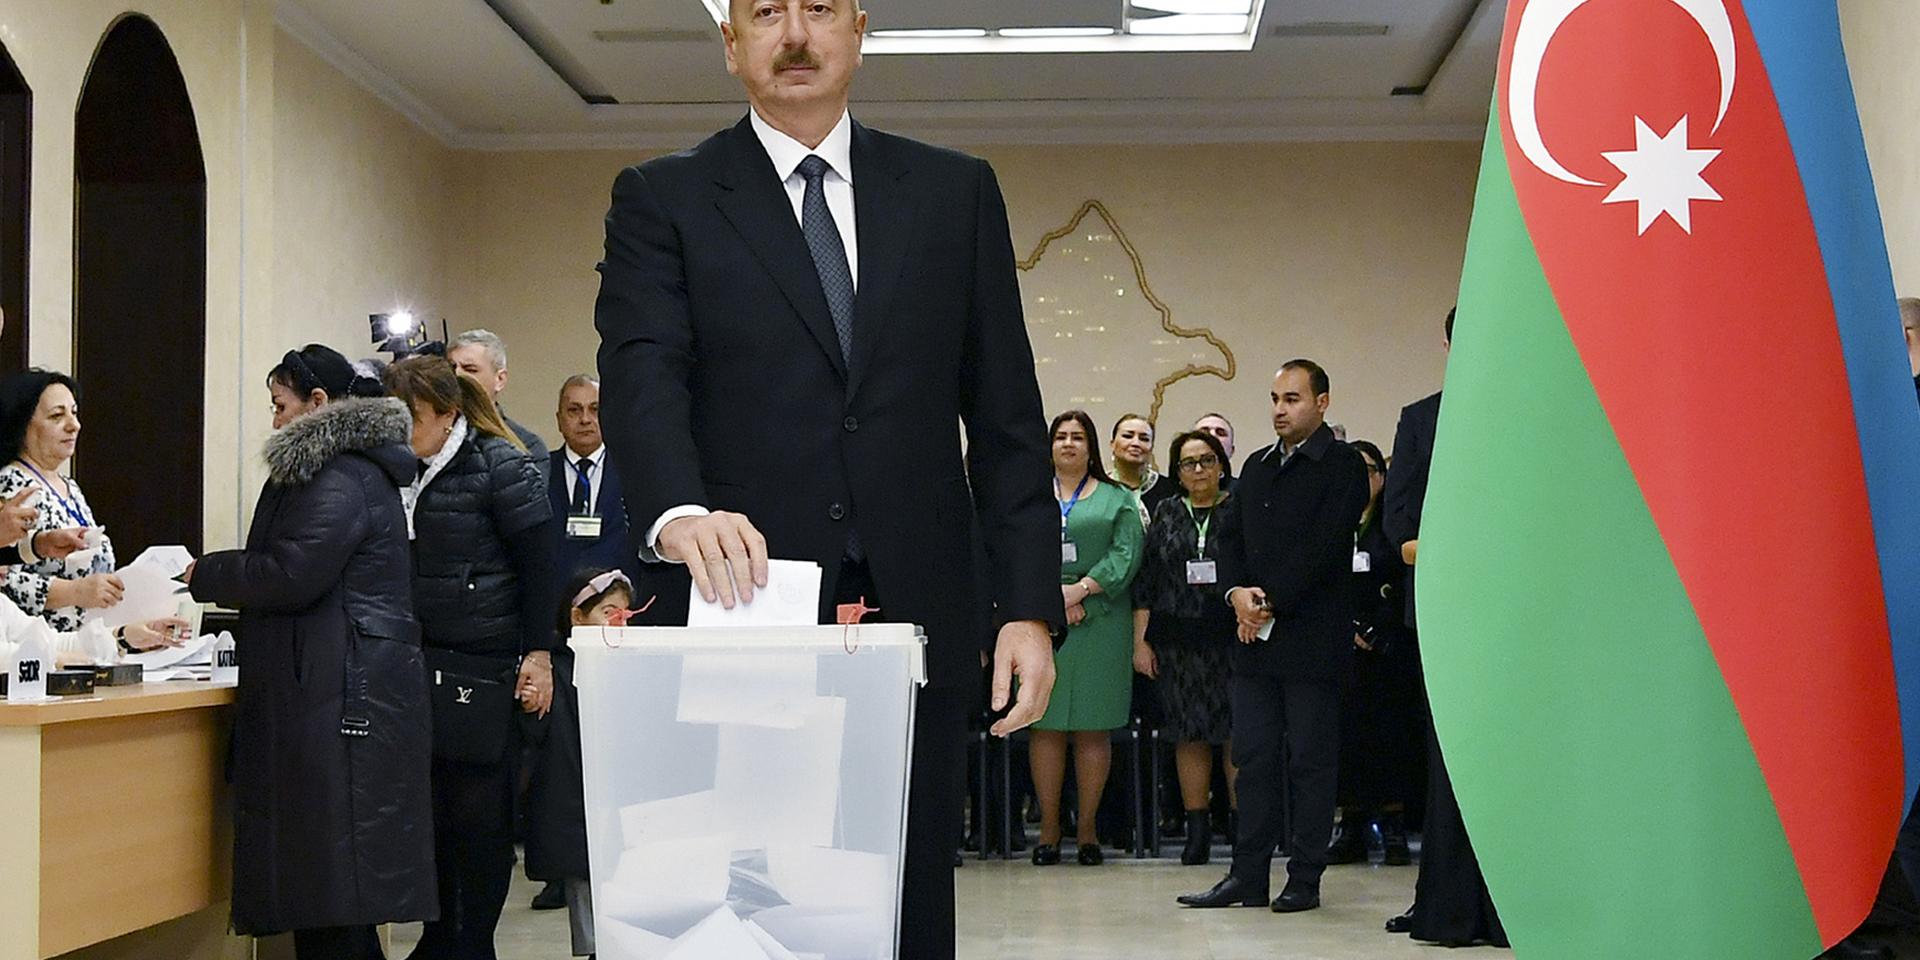 President Ilham Aliyev röstar i Baku den 9 februari. Bilden kommer från presidentkansliet i Azerbajdzjan.